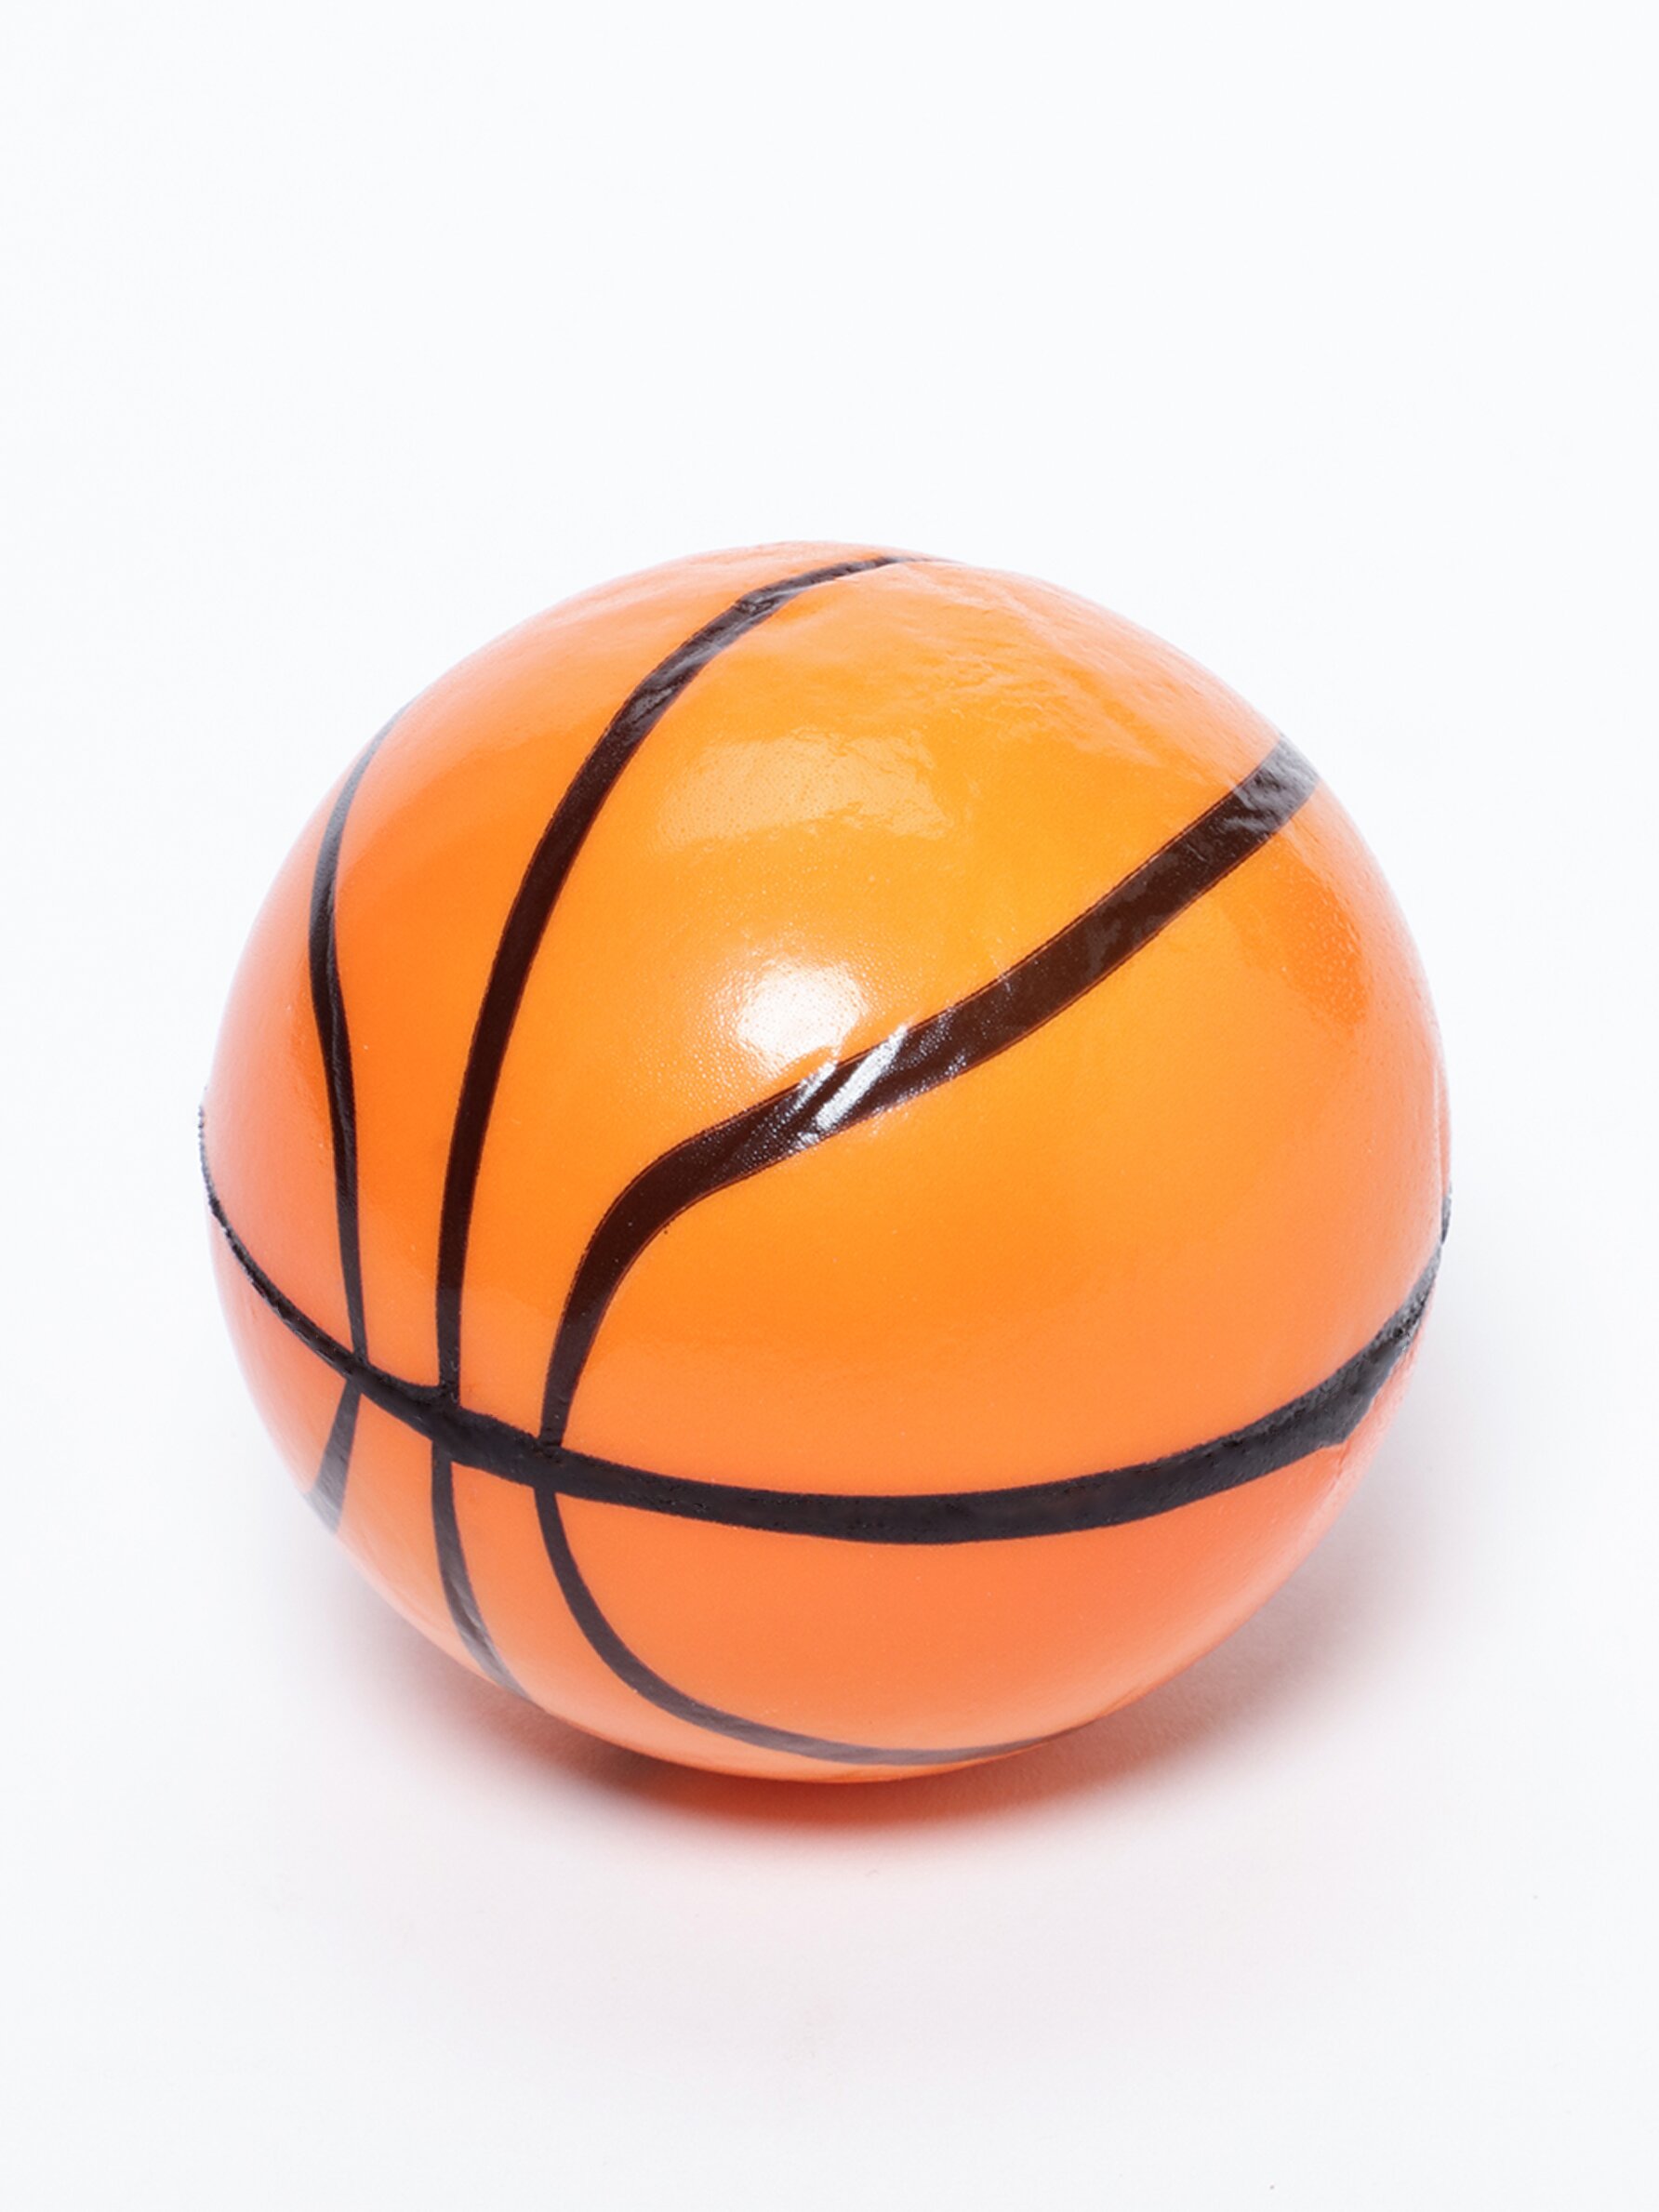 Cesto com bola de basquetebol - Jogos - ACESSÓRIOS - Mulher 